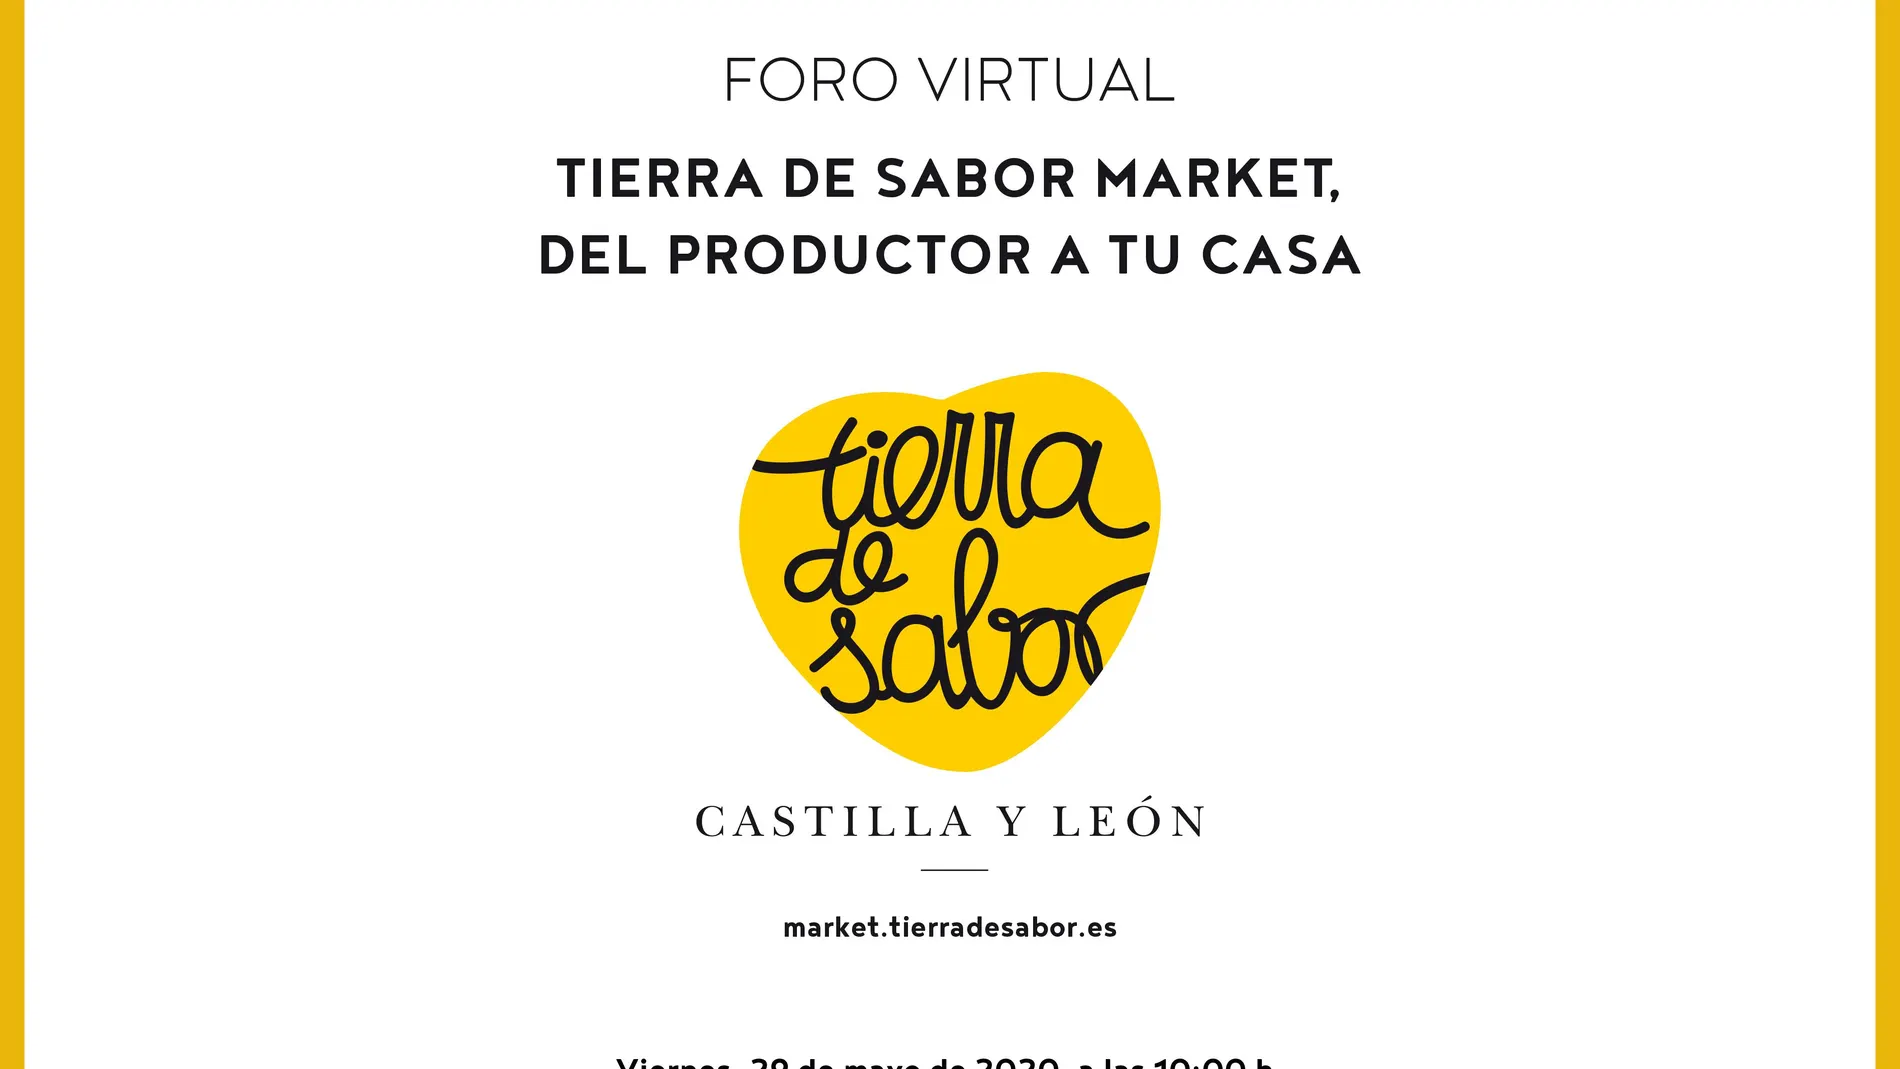 Foro Tierra de Sabor Market